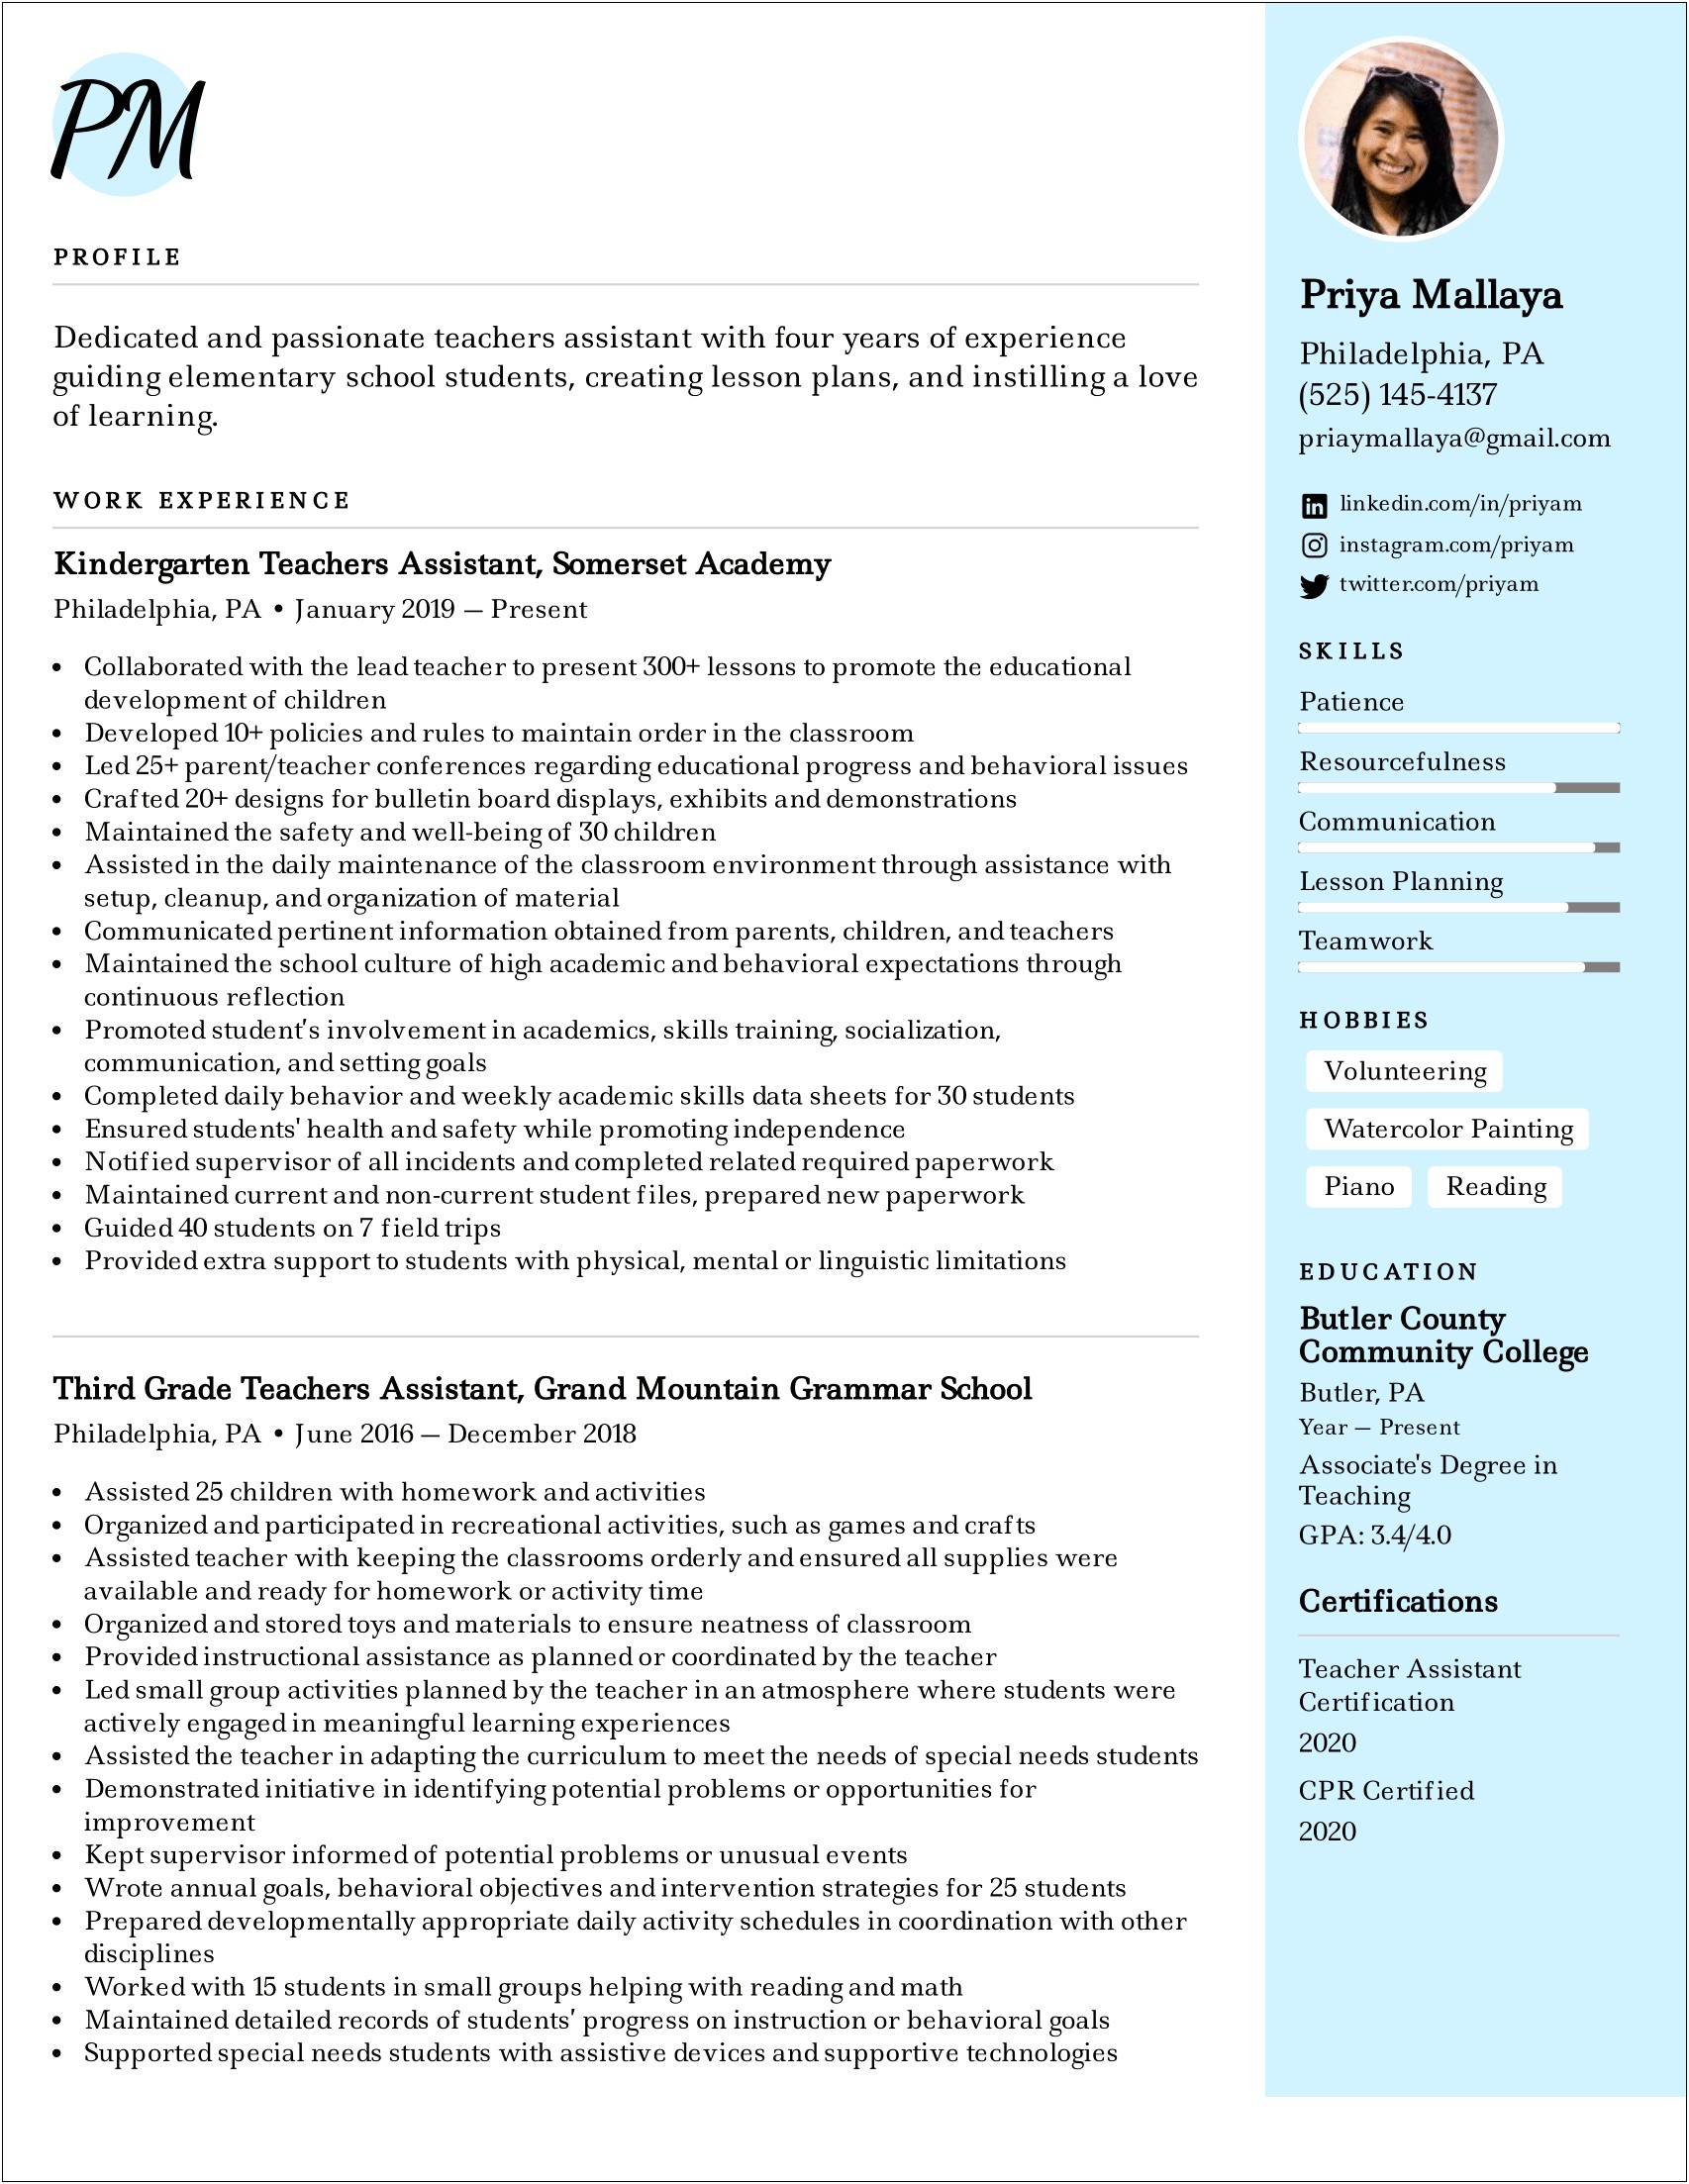 Sample Resume Objectives For Teacher Assistant